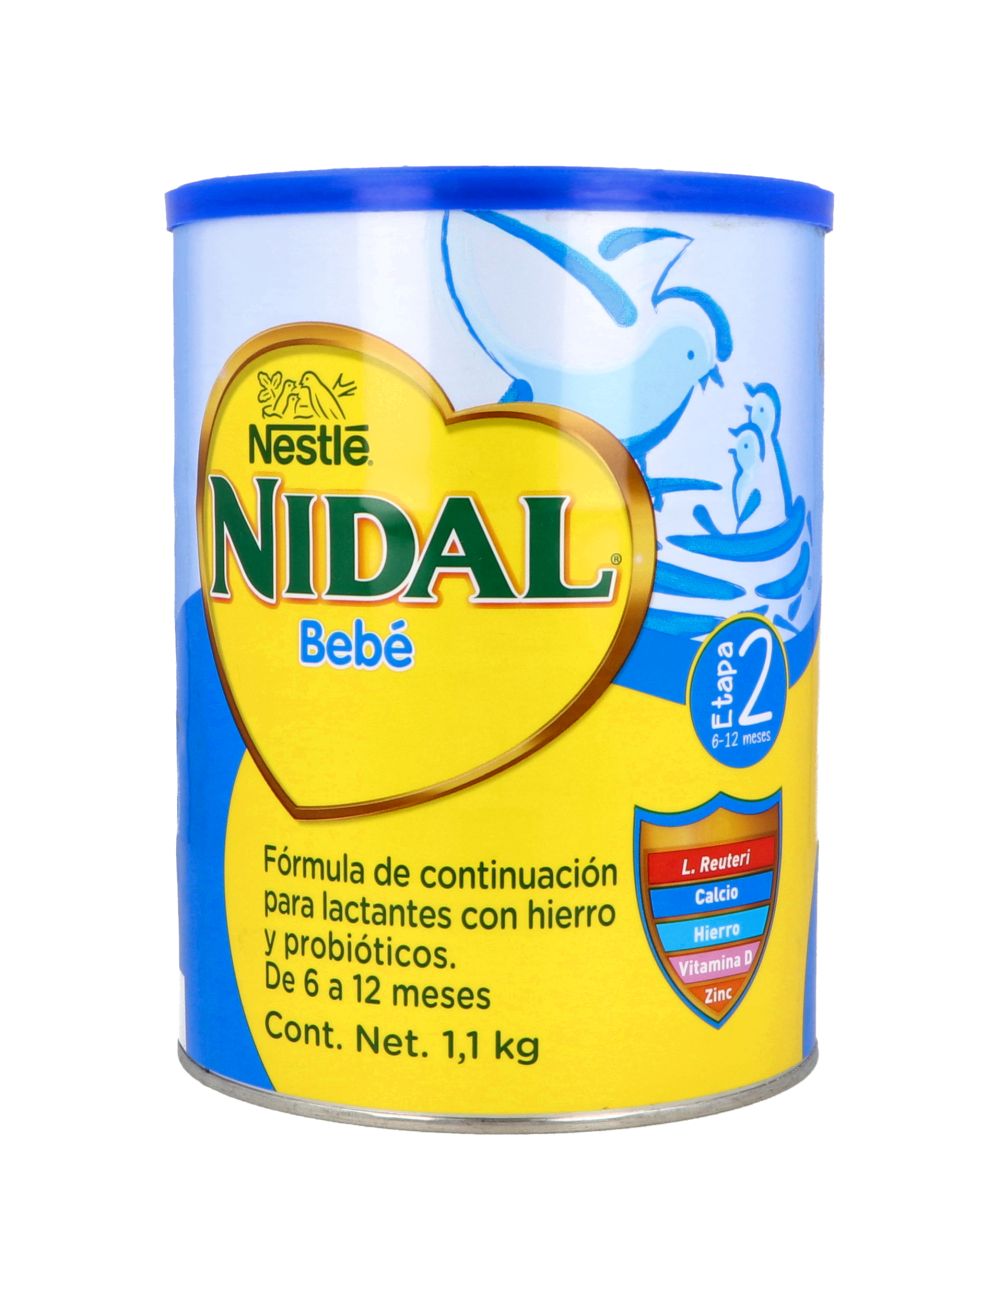 Precio Nidal 2 Bebe fórmula 6-12 meses 1.1 kg | Farmalisto MX